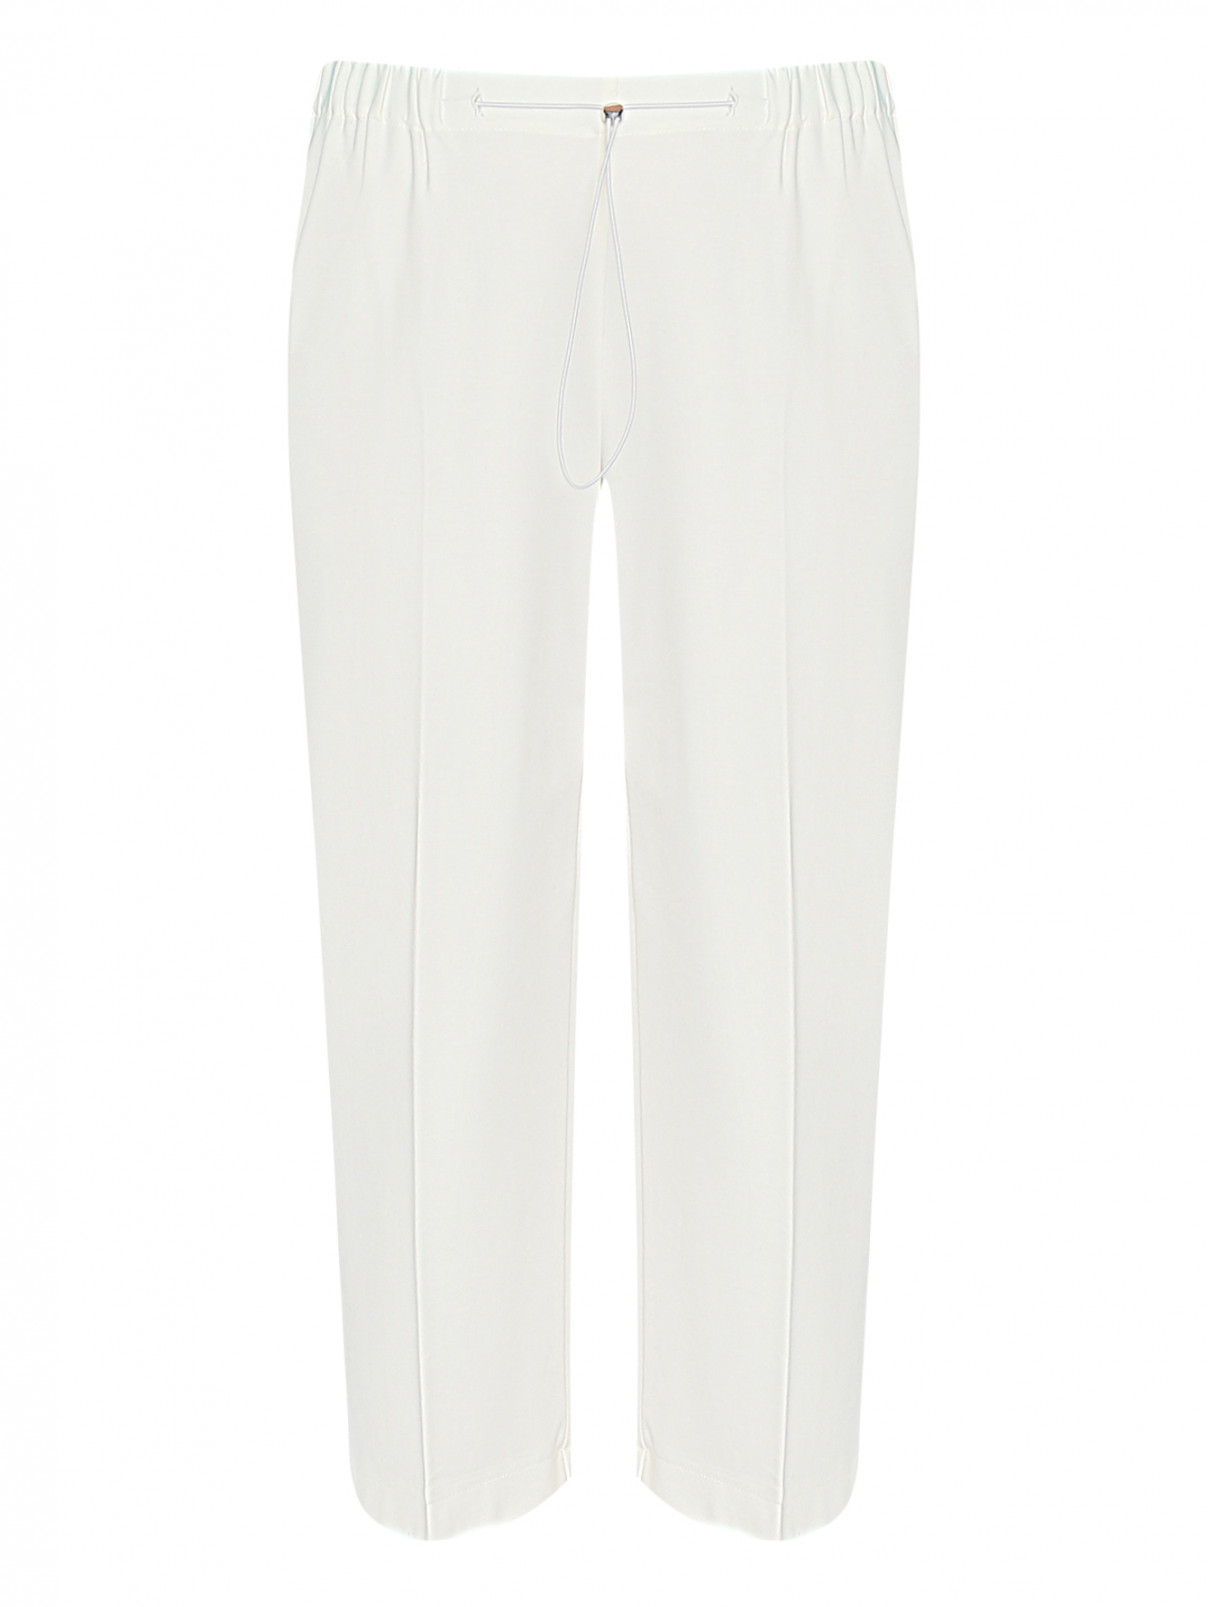 Трикотажные брюки на резинке Persona by Marina Rinaldi  –  Общий вид  – Цвет:  Белый